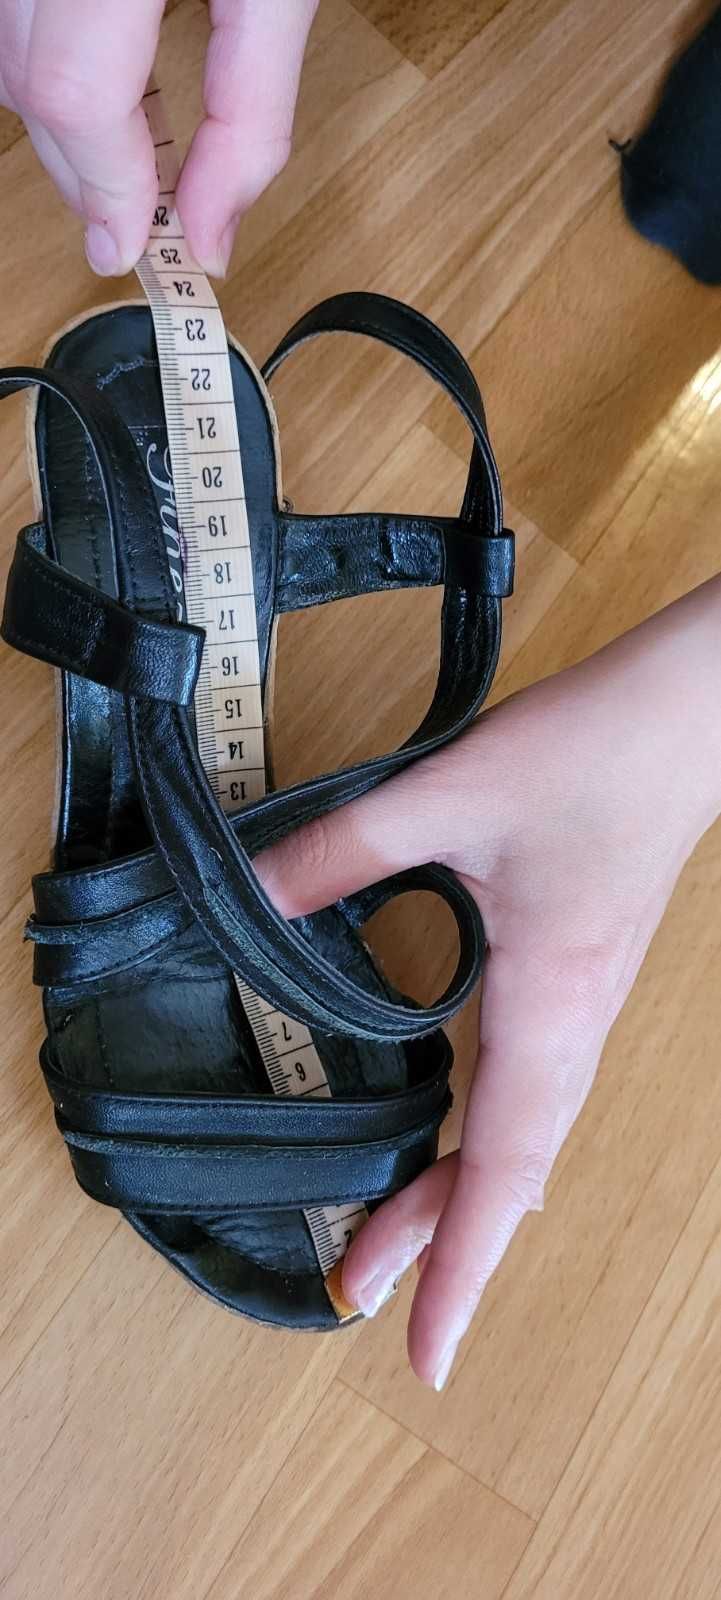 Czarne skórzane polskie sandały na koturnie firmy Finezja rozmiar 36.